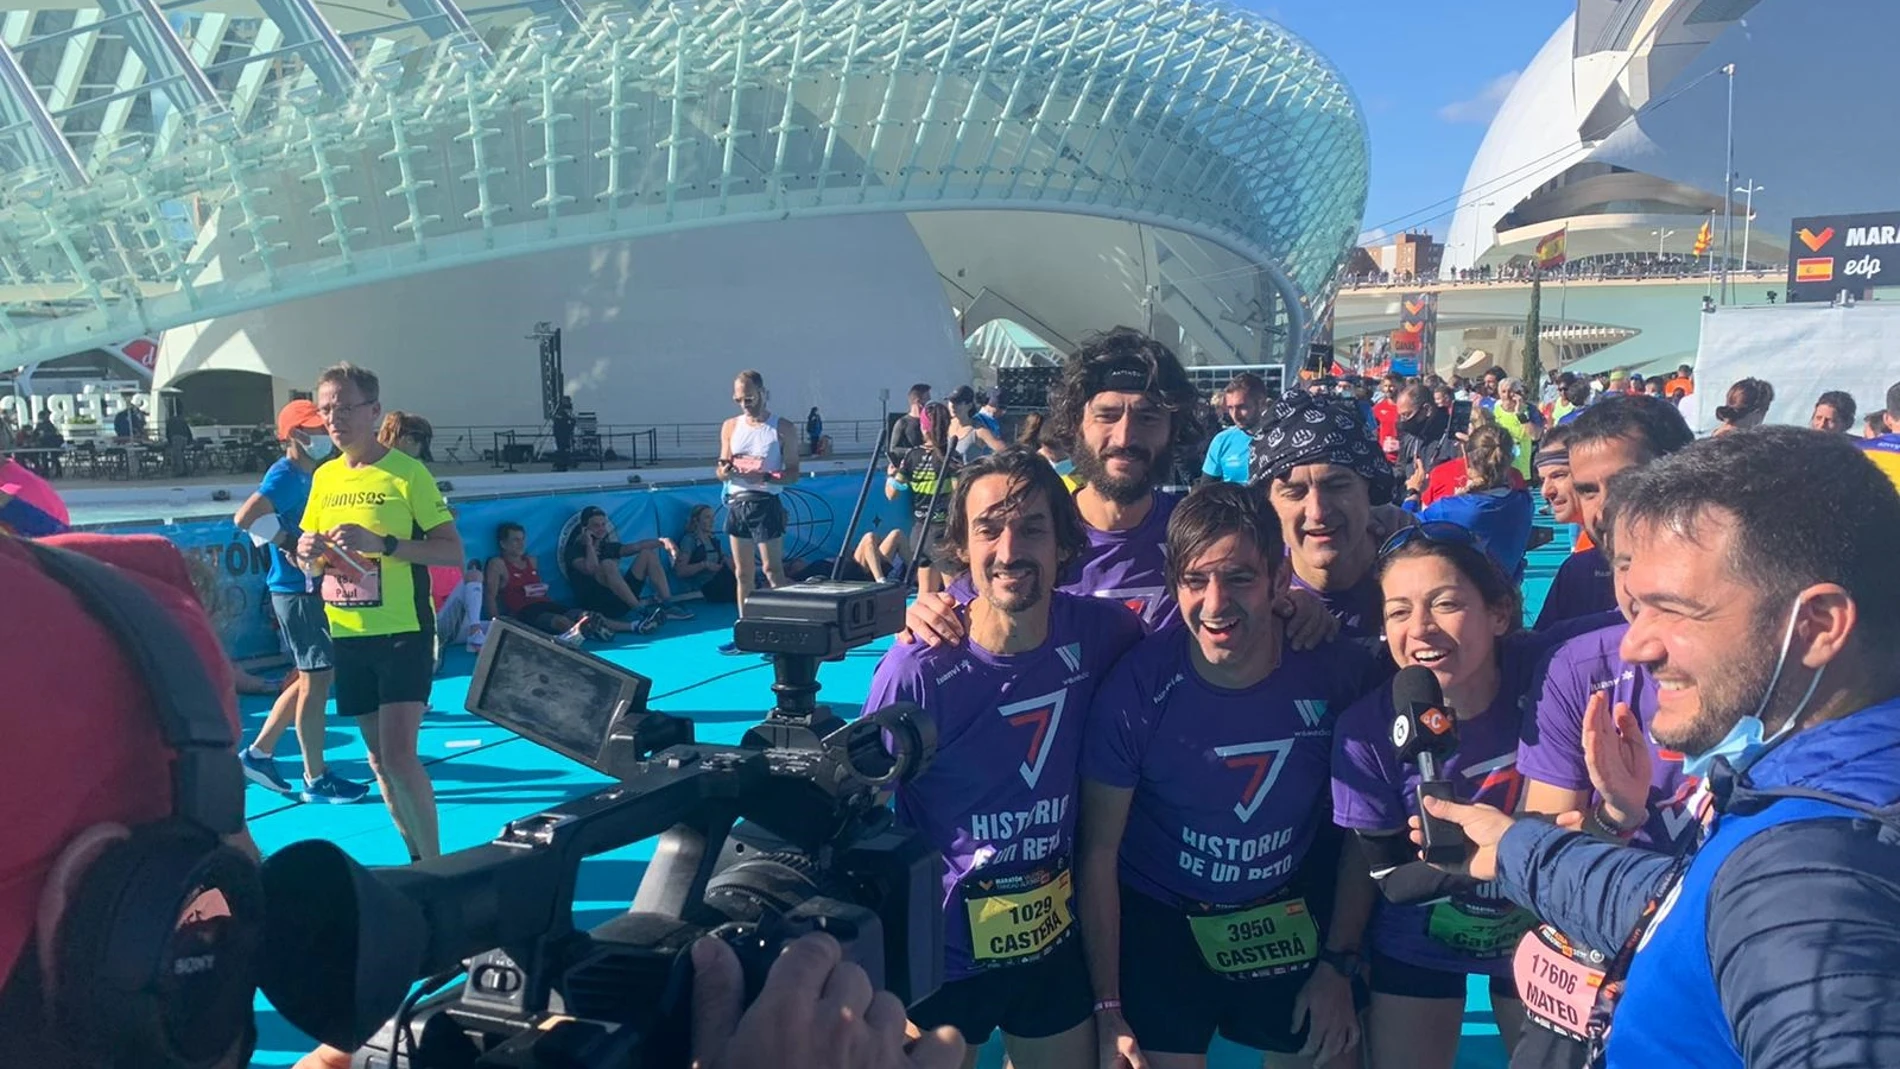 Los hermanos Casterá Brugada logran el récord de hermanos juntos corriendo un maratón en el Maratón de Valencia